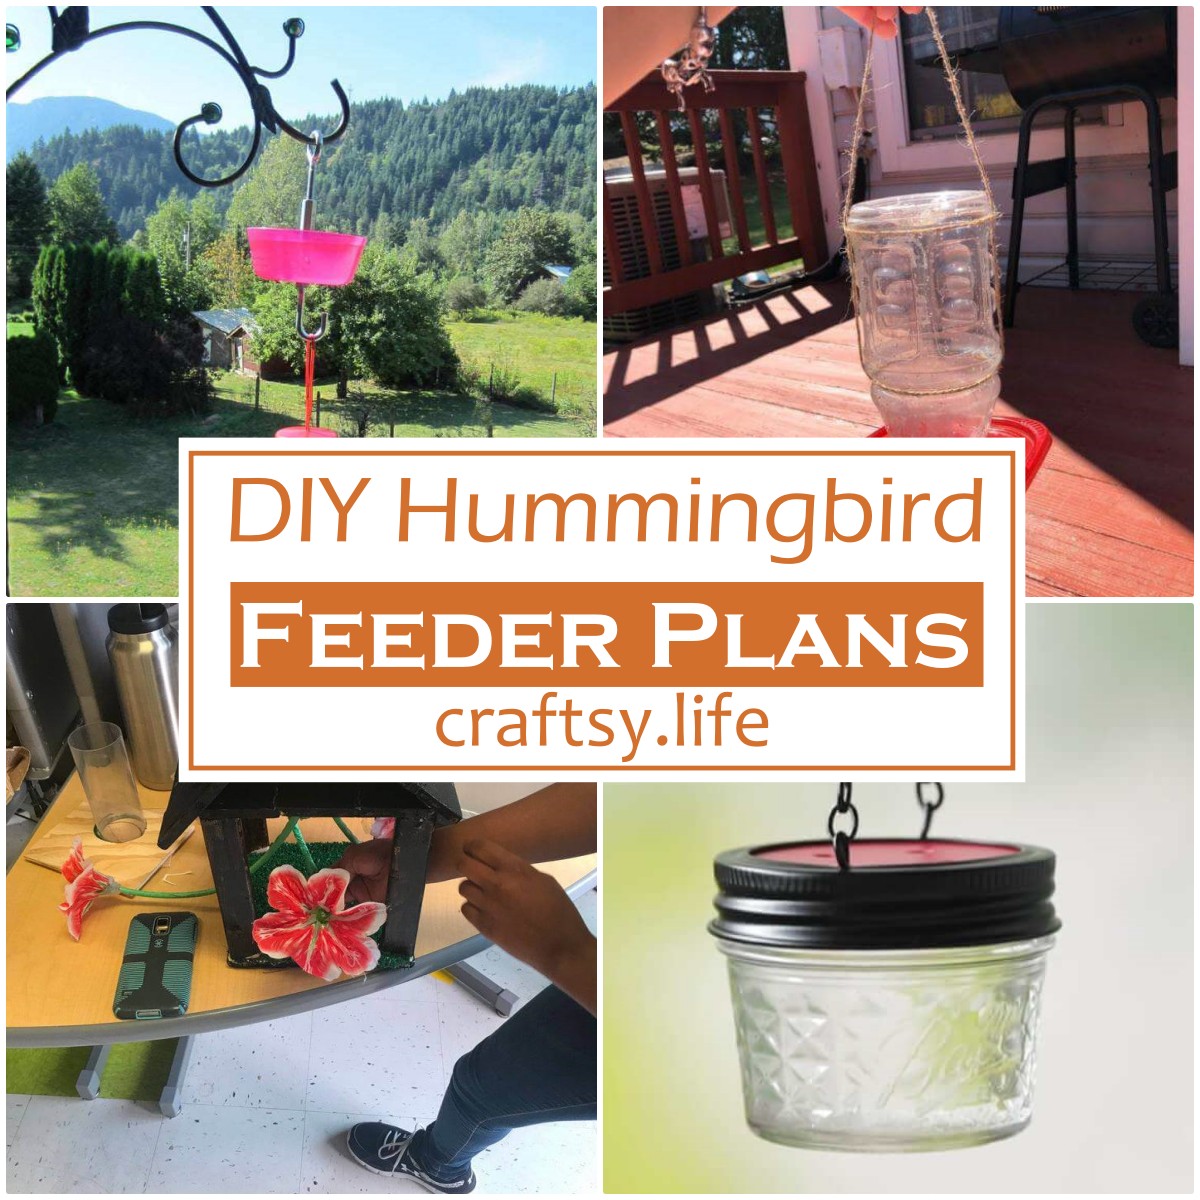 DIY Hummingbird Feeder Plans